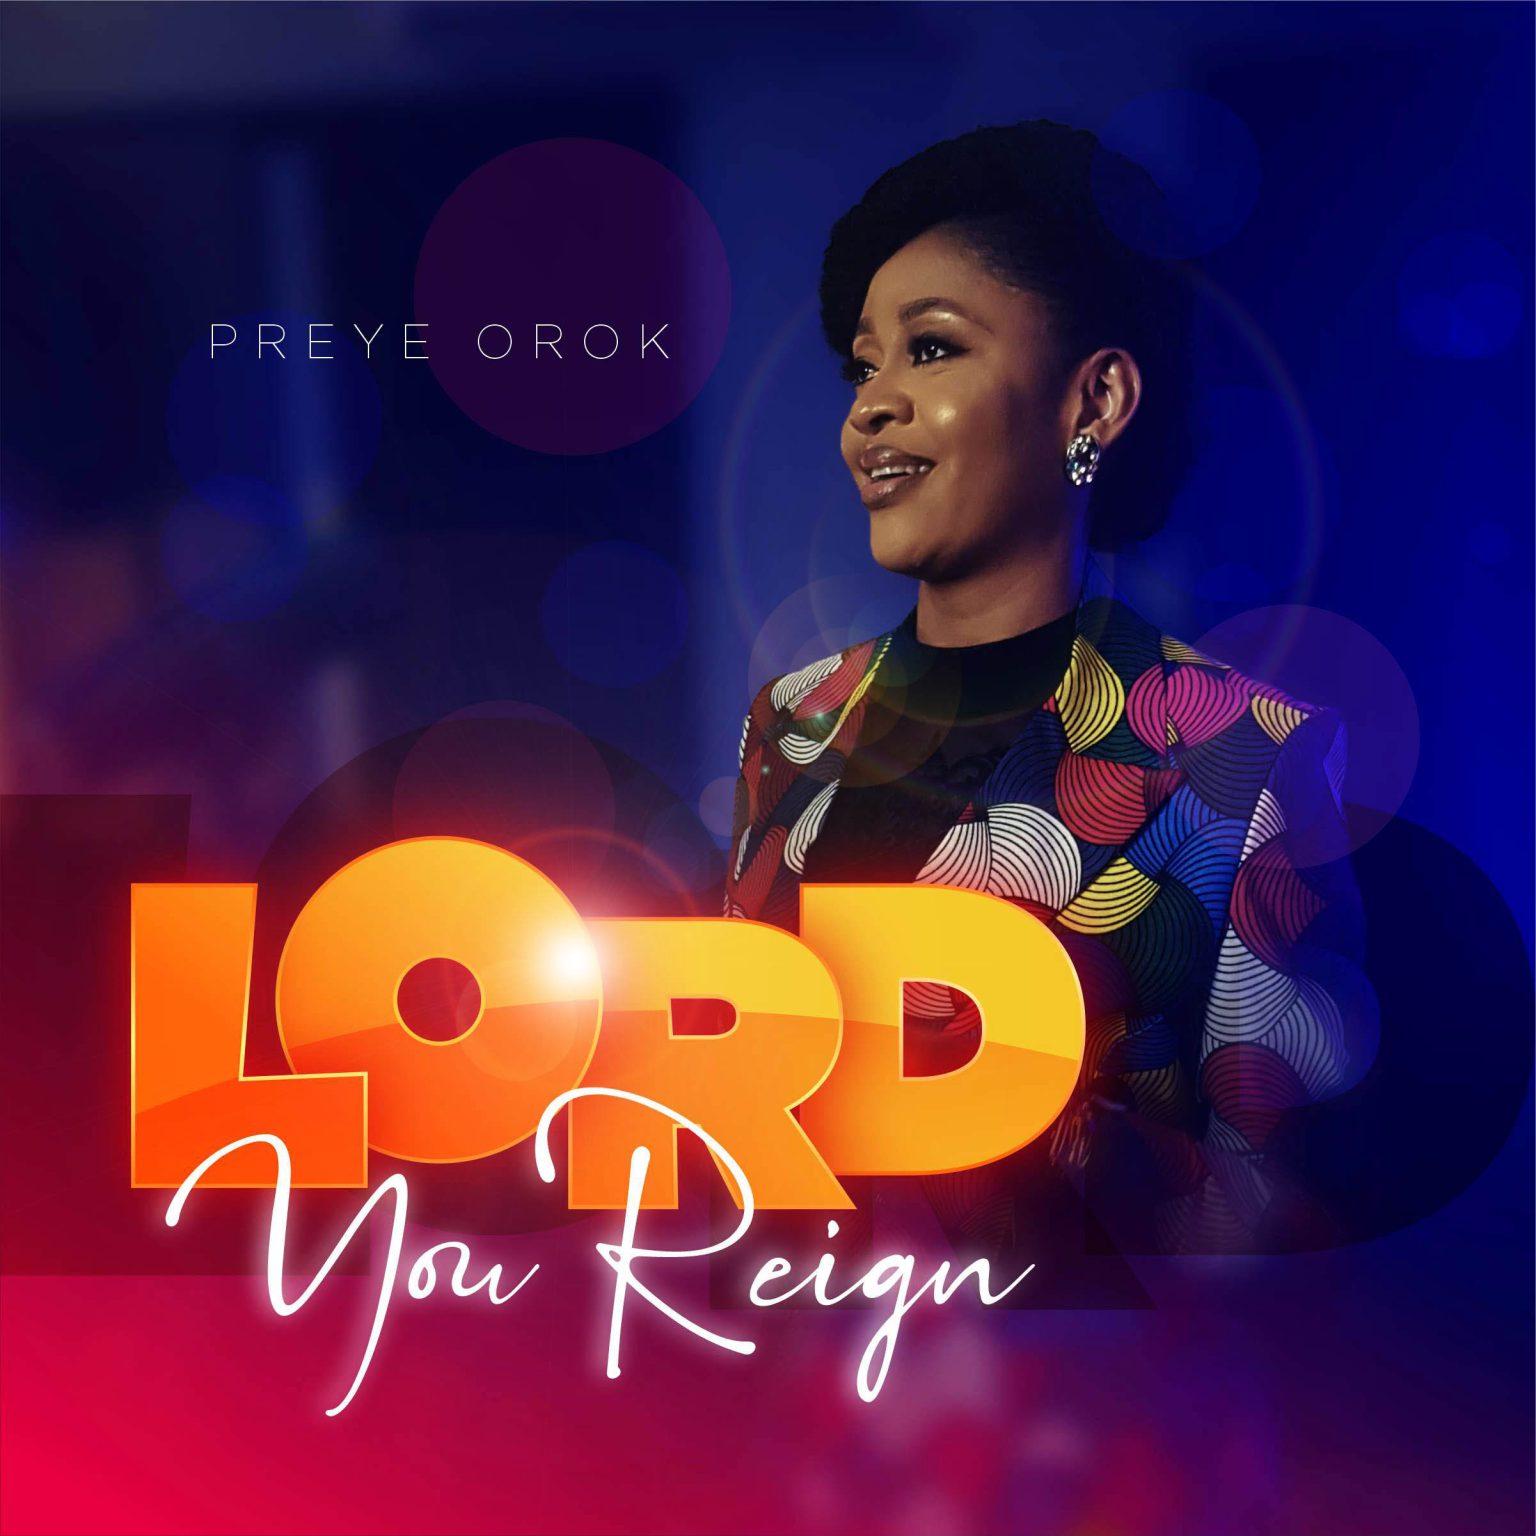 Preye Orok – Lord You Reign